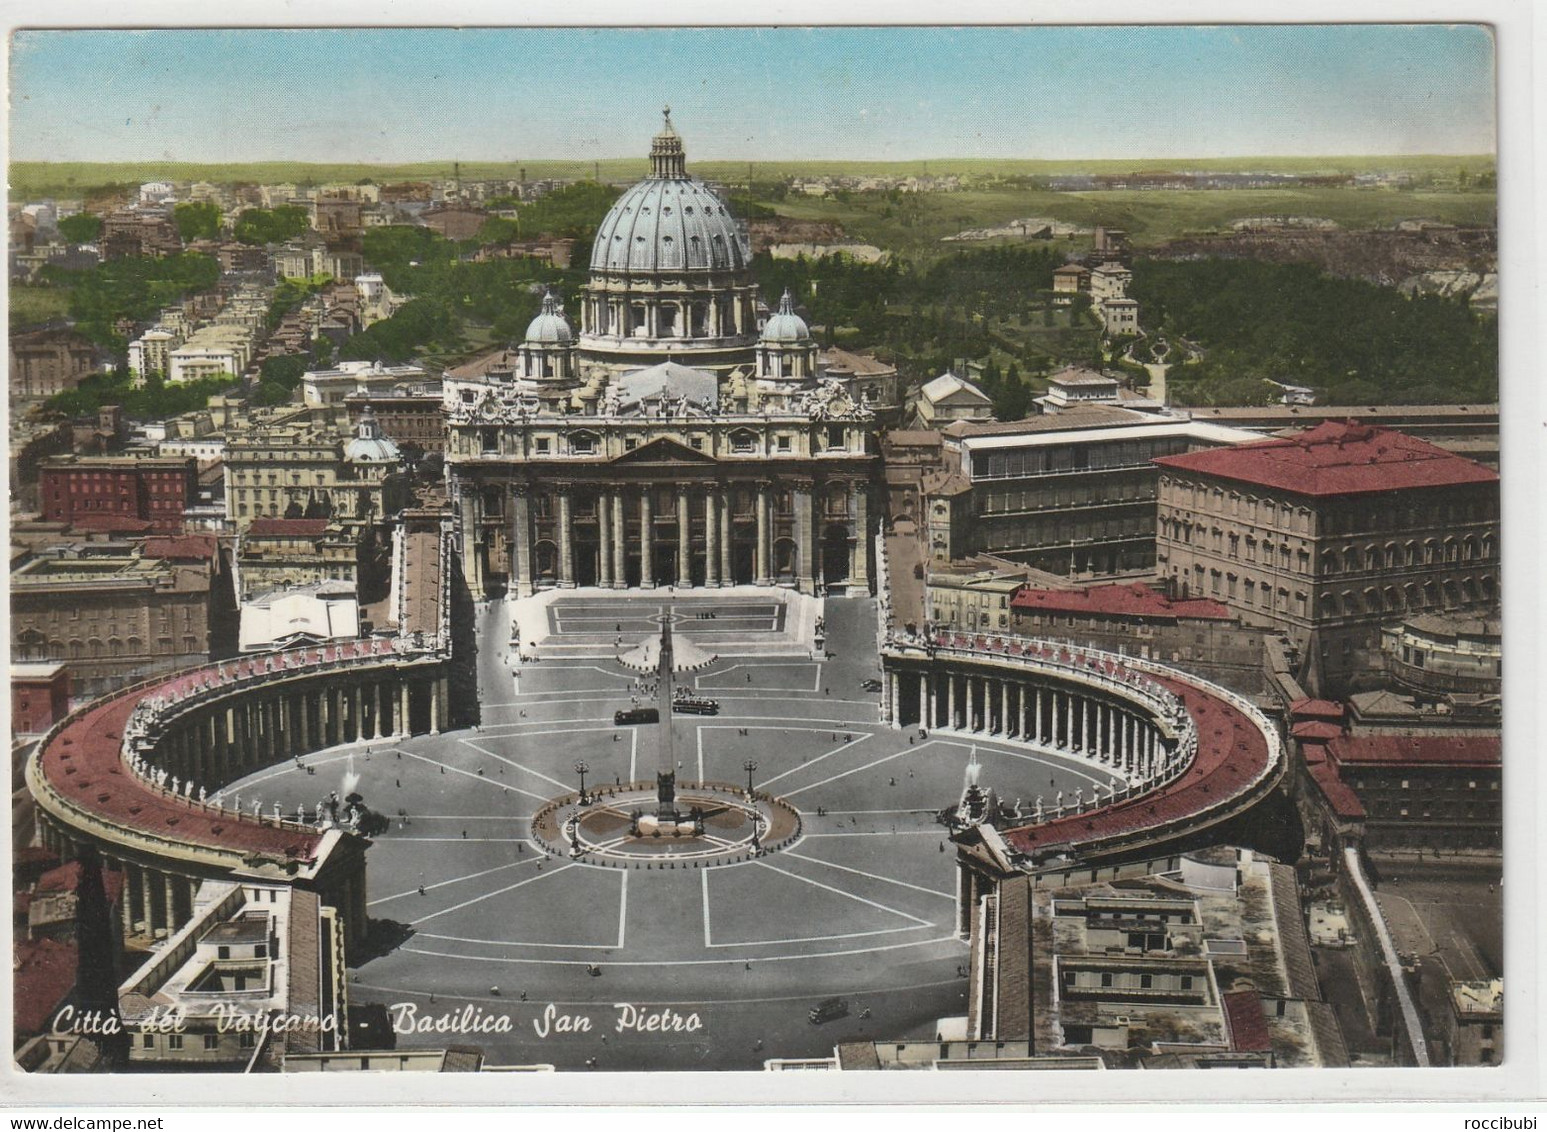 Citta Del Vaticano, Basilica San Pietro - San Pietro